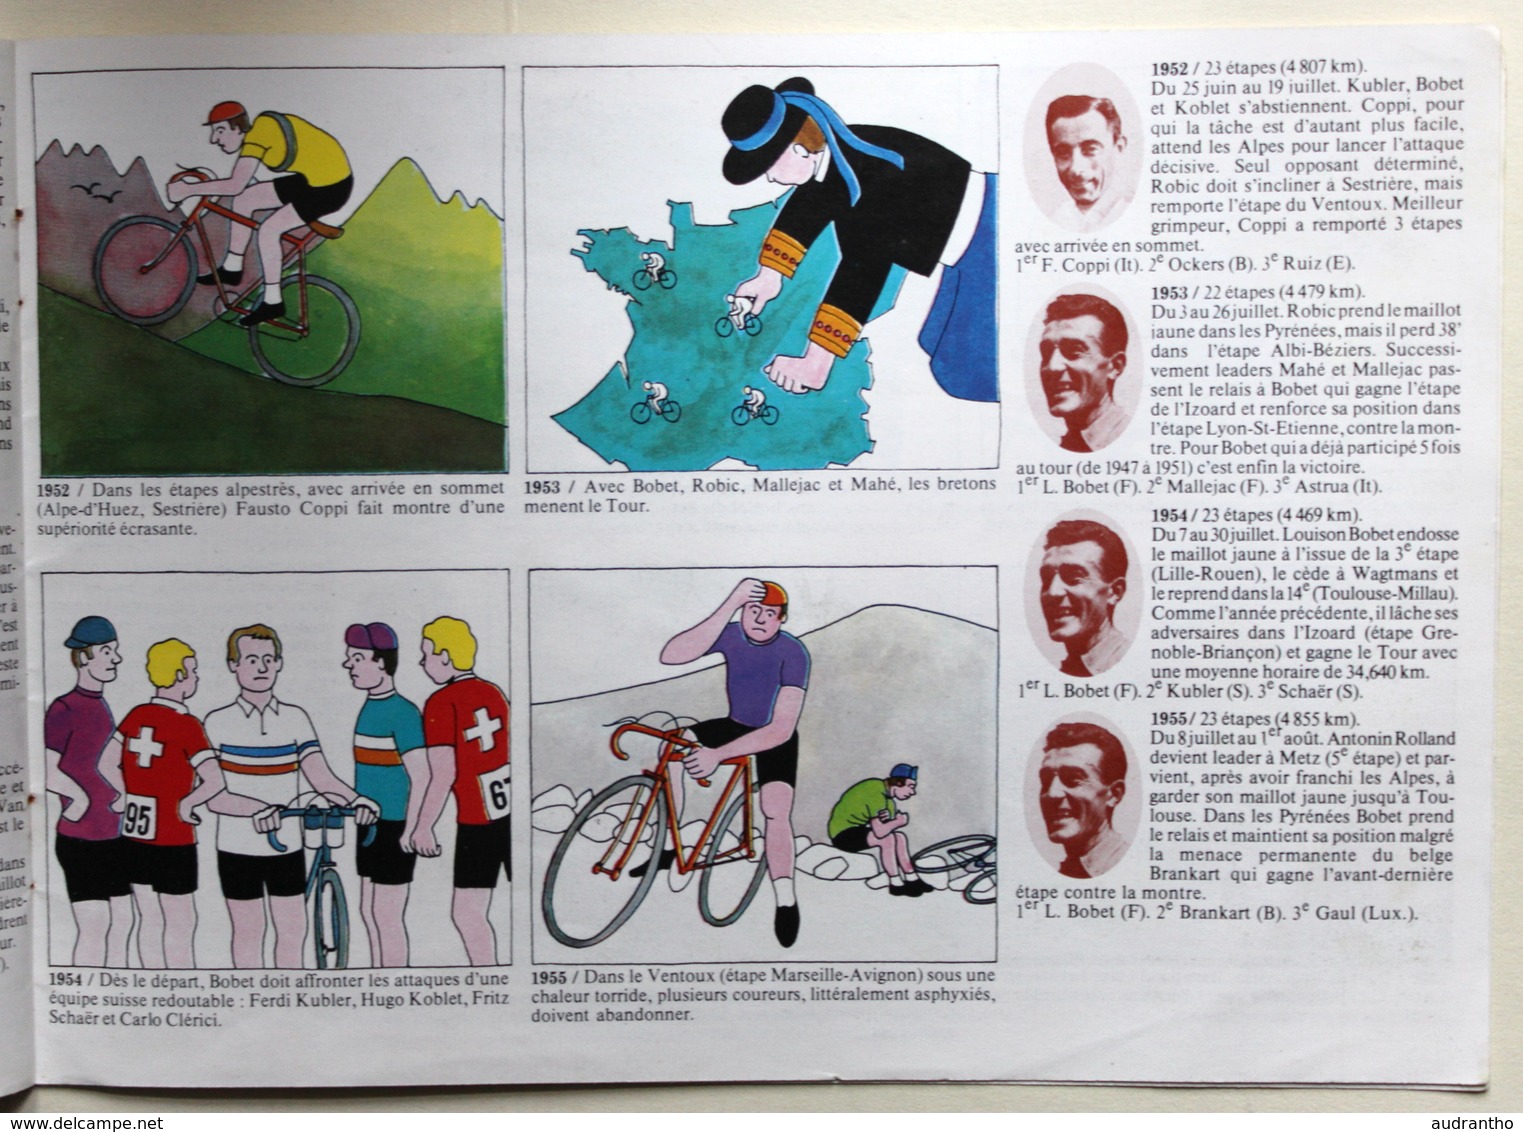 Document publicitaire Michelin Images du Tour de France Bibendum de 1903 à 1973 Cyclisme Vélo